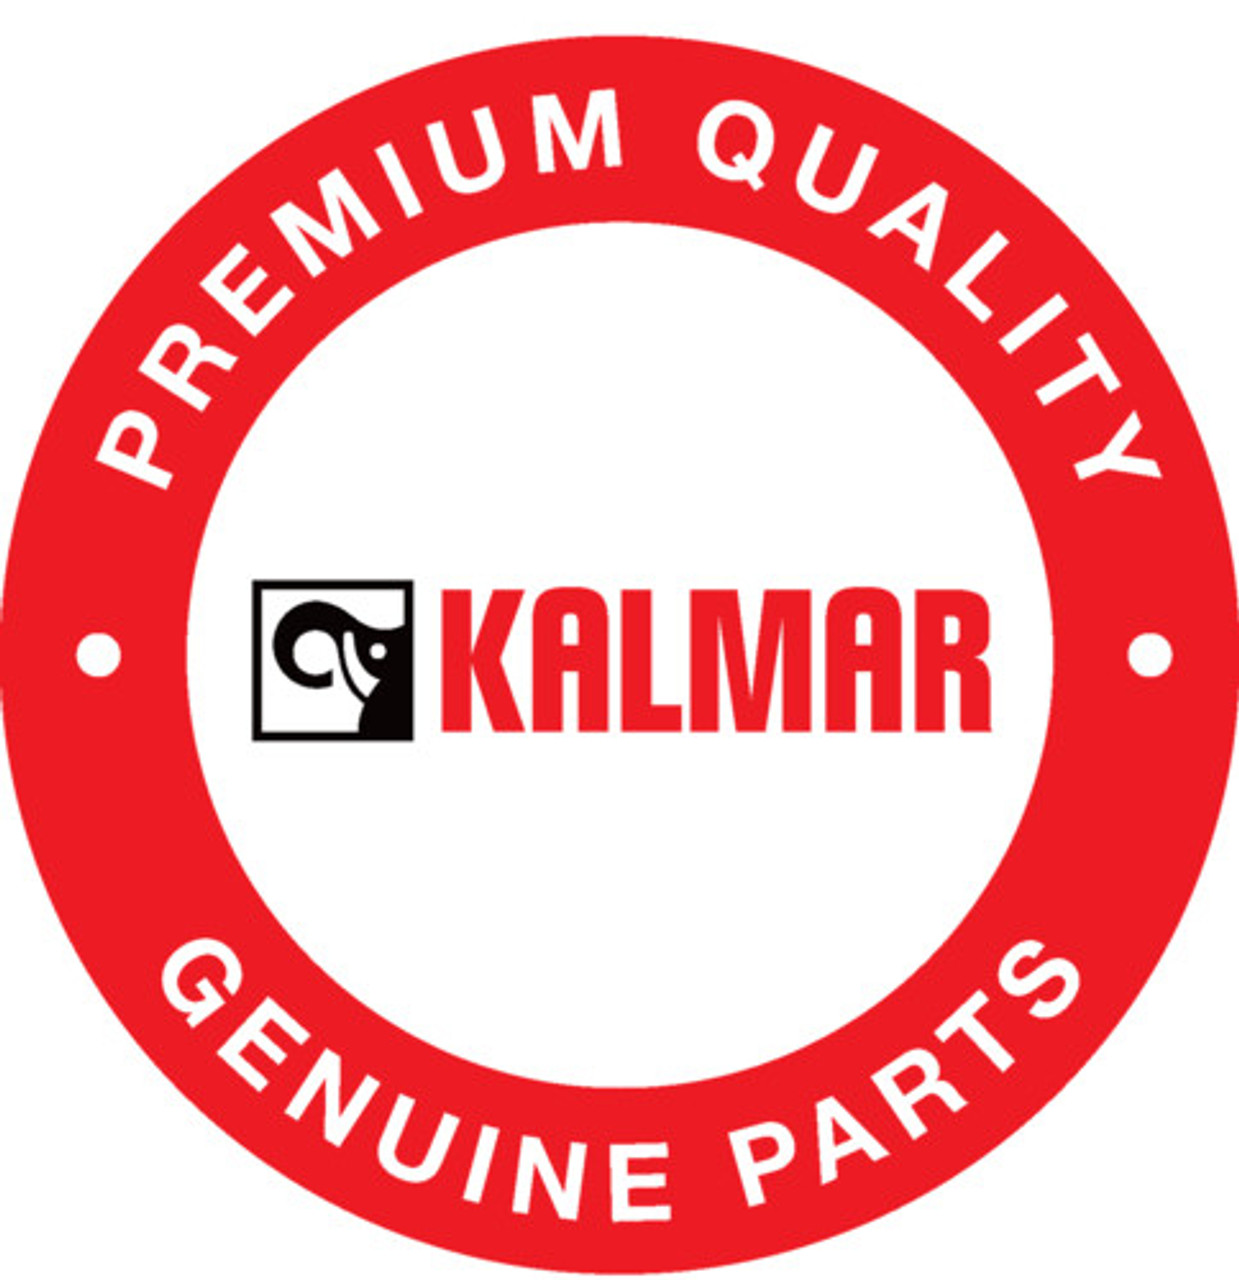 A60674.0200: Kalmar® Display Unit